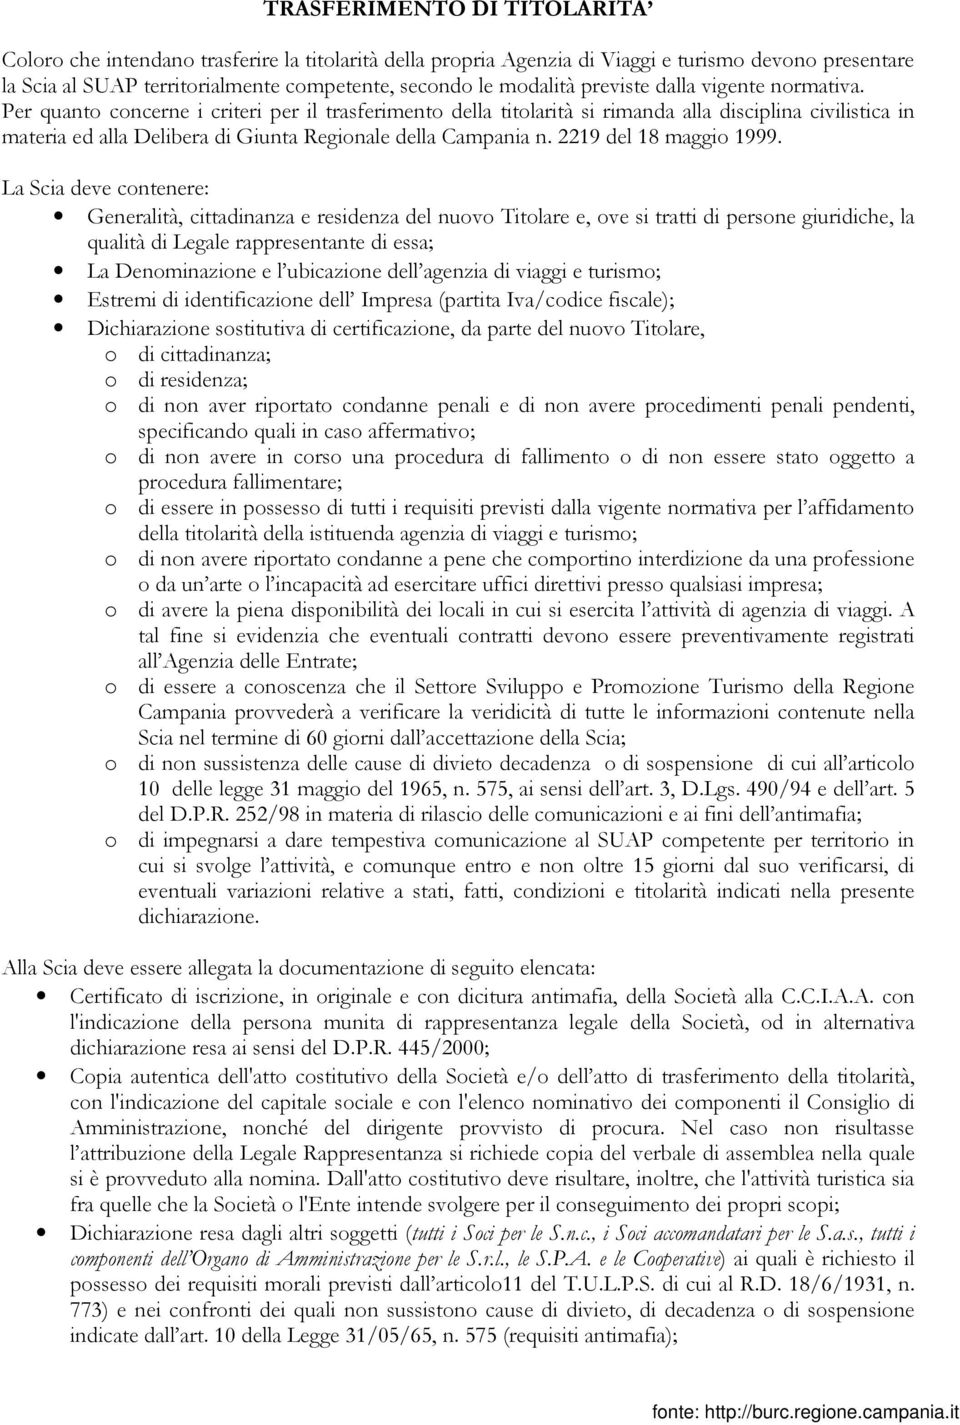 Per quanto concerne i criteri per il trasferimento della titolarità si rimanda alla disciplina civilistica in materia ed alla Delibera di Giunta Regionale della Campania n. 2219 del 18 maggio 1999.